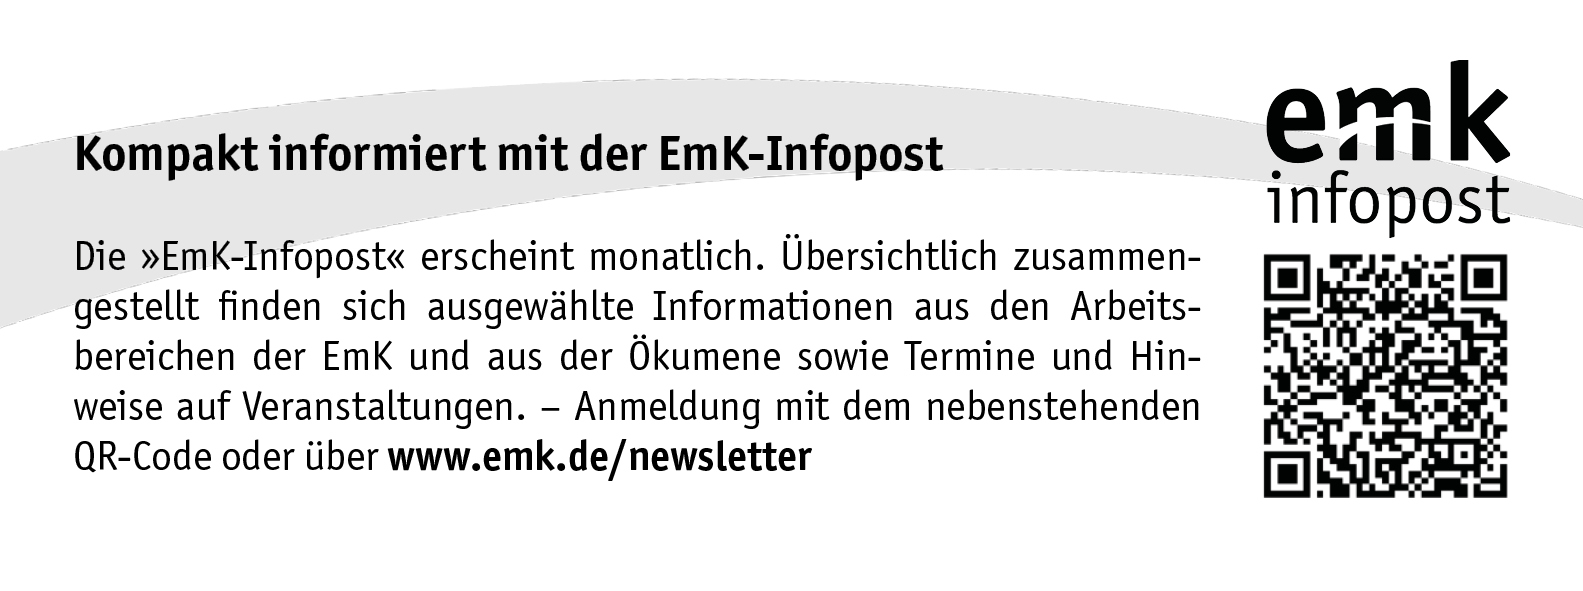 Anmeldung zur EmK-Infopost unter https://www.emk.de/newsletter